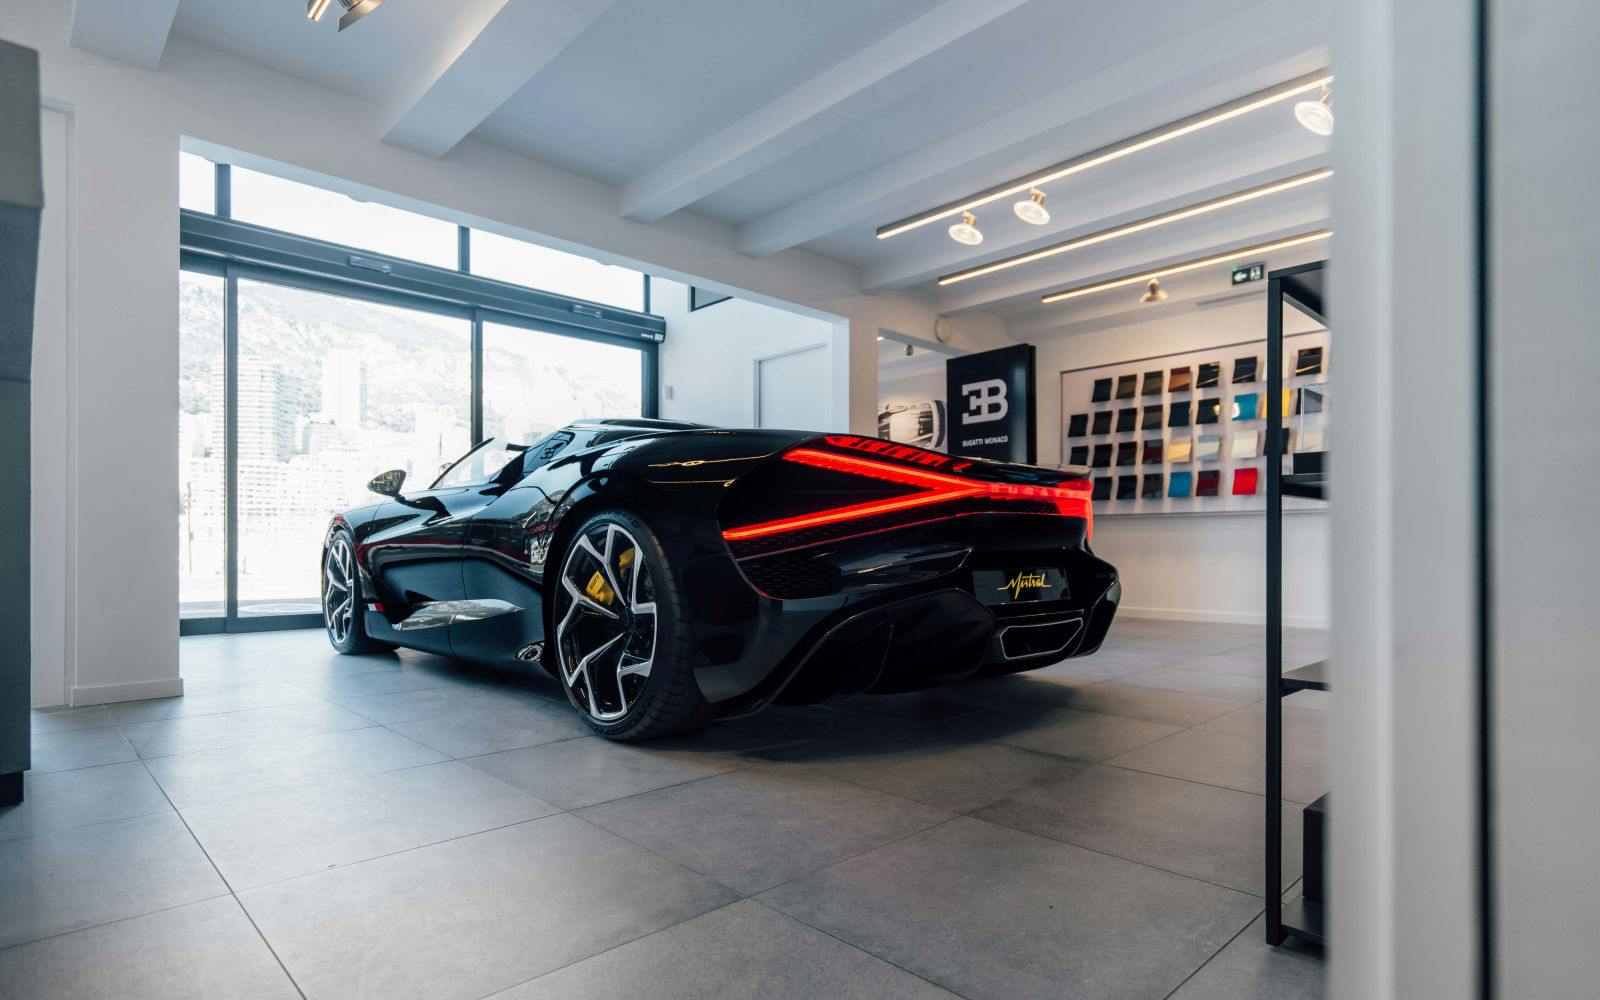 Der Bugatti Monaco Showroom wurde in Zusammenarbeit mit der Segond Automobiles-Gruppe realisiert, die seit über 35 Jahren im Fürstentum Monaco tätig ist.